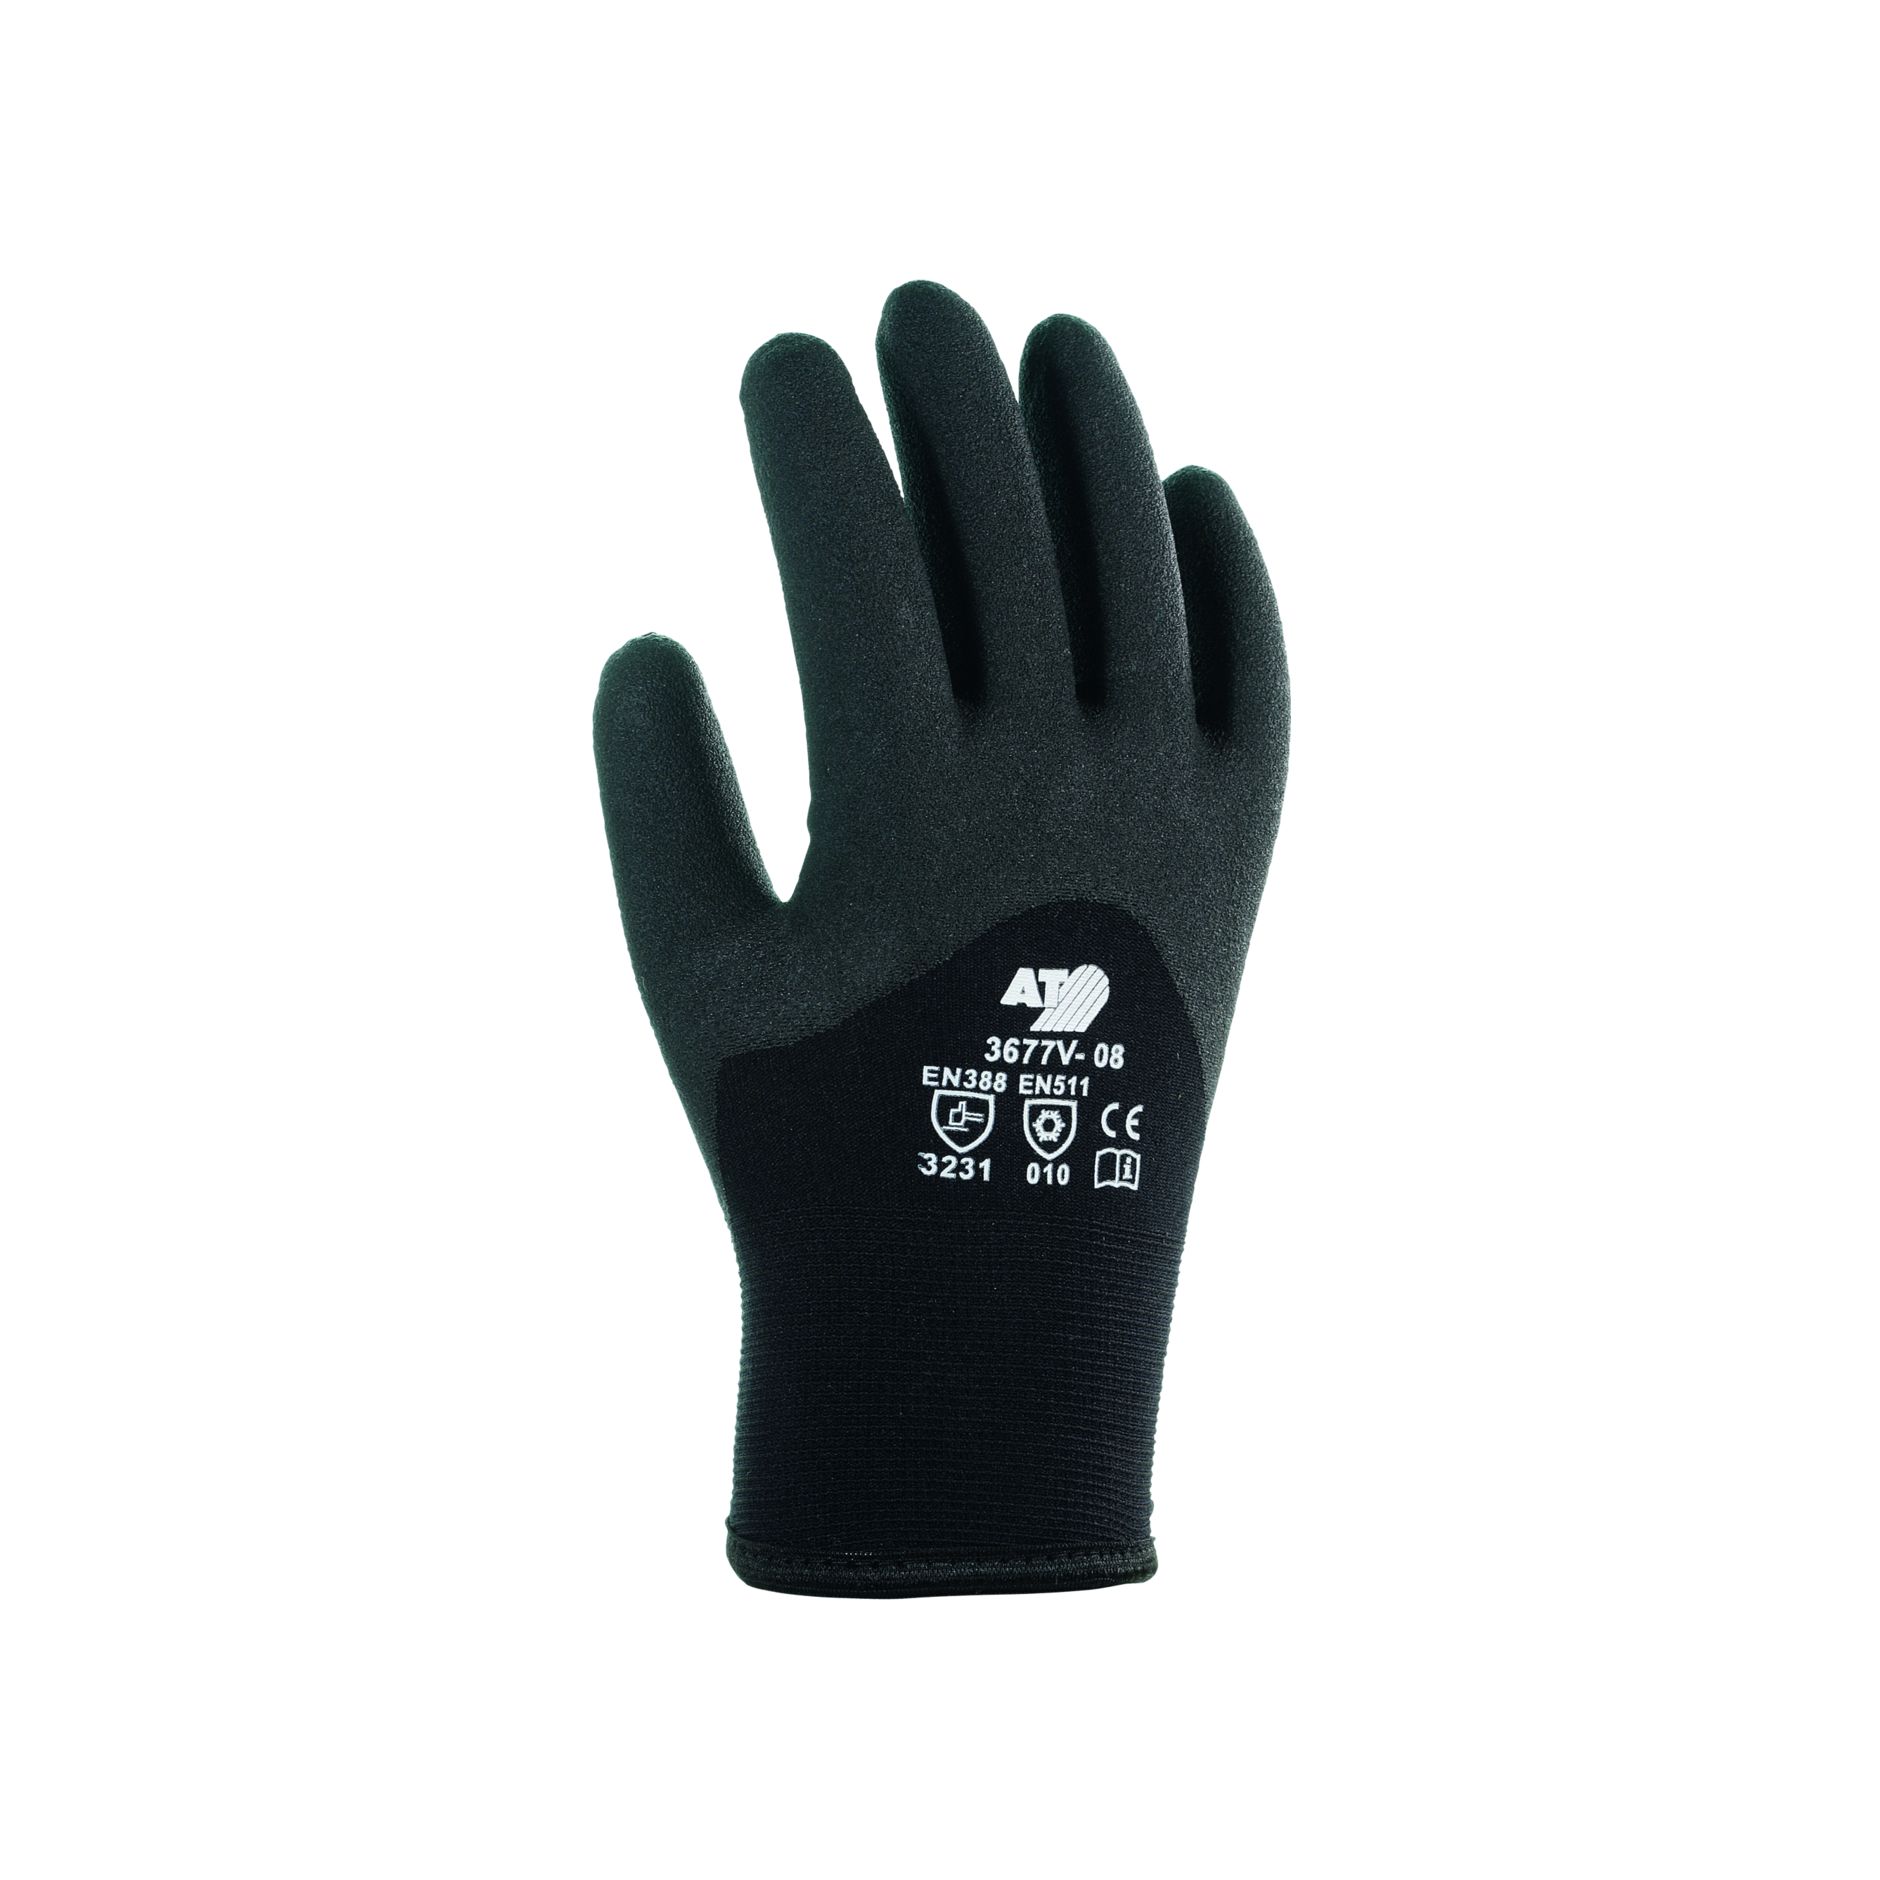 ASATEX Paire de gants de protection contre le froid 3677V 8